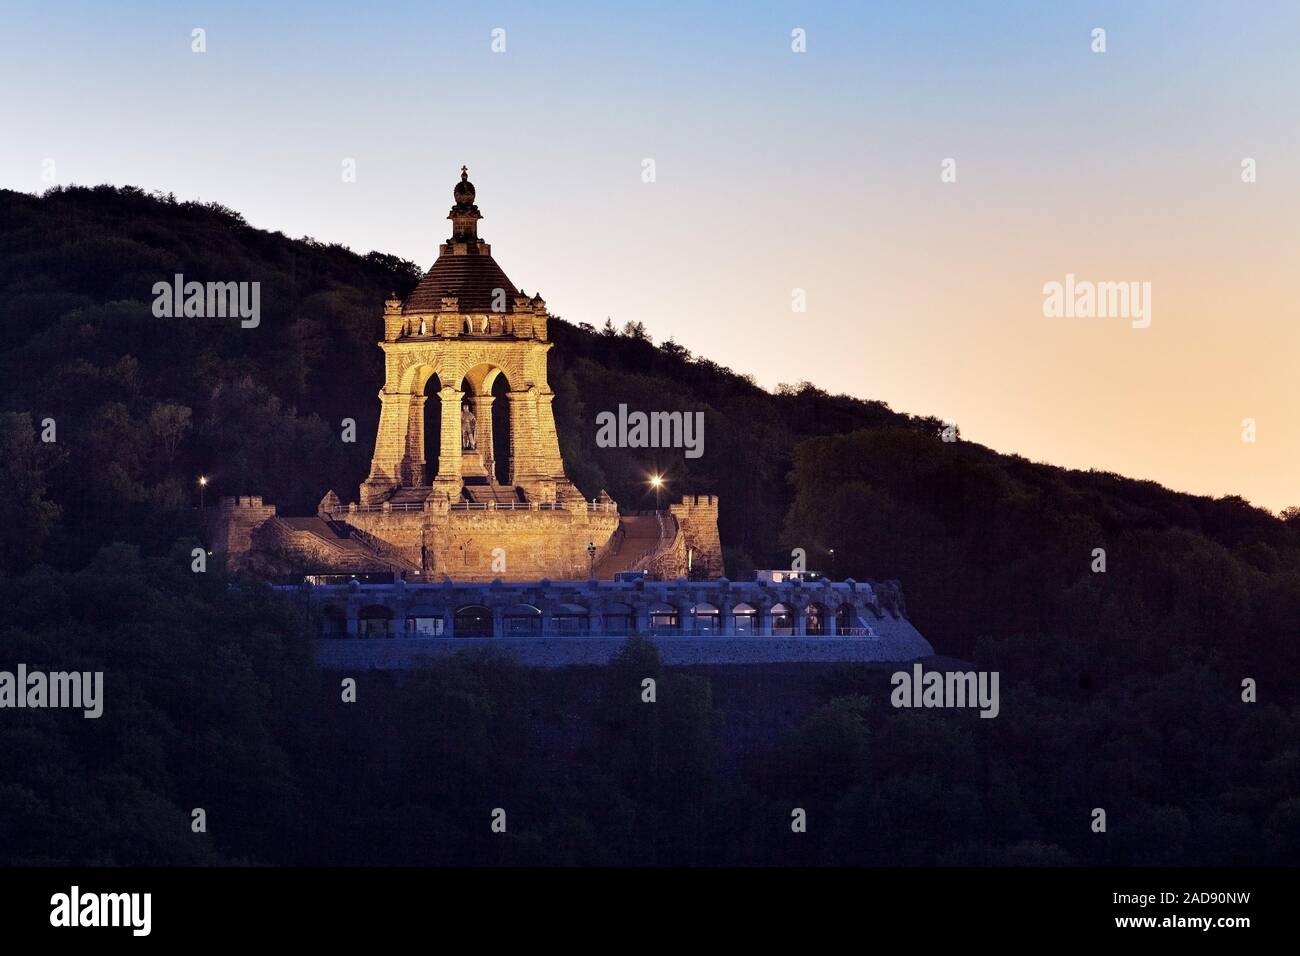 Illuminated Kaiser Wilhelm Monument, Porta Westfalica, North Rhine-Westphalia, Germany, Europe Stock Photo